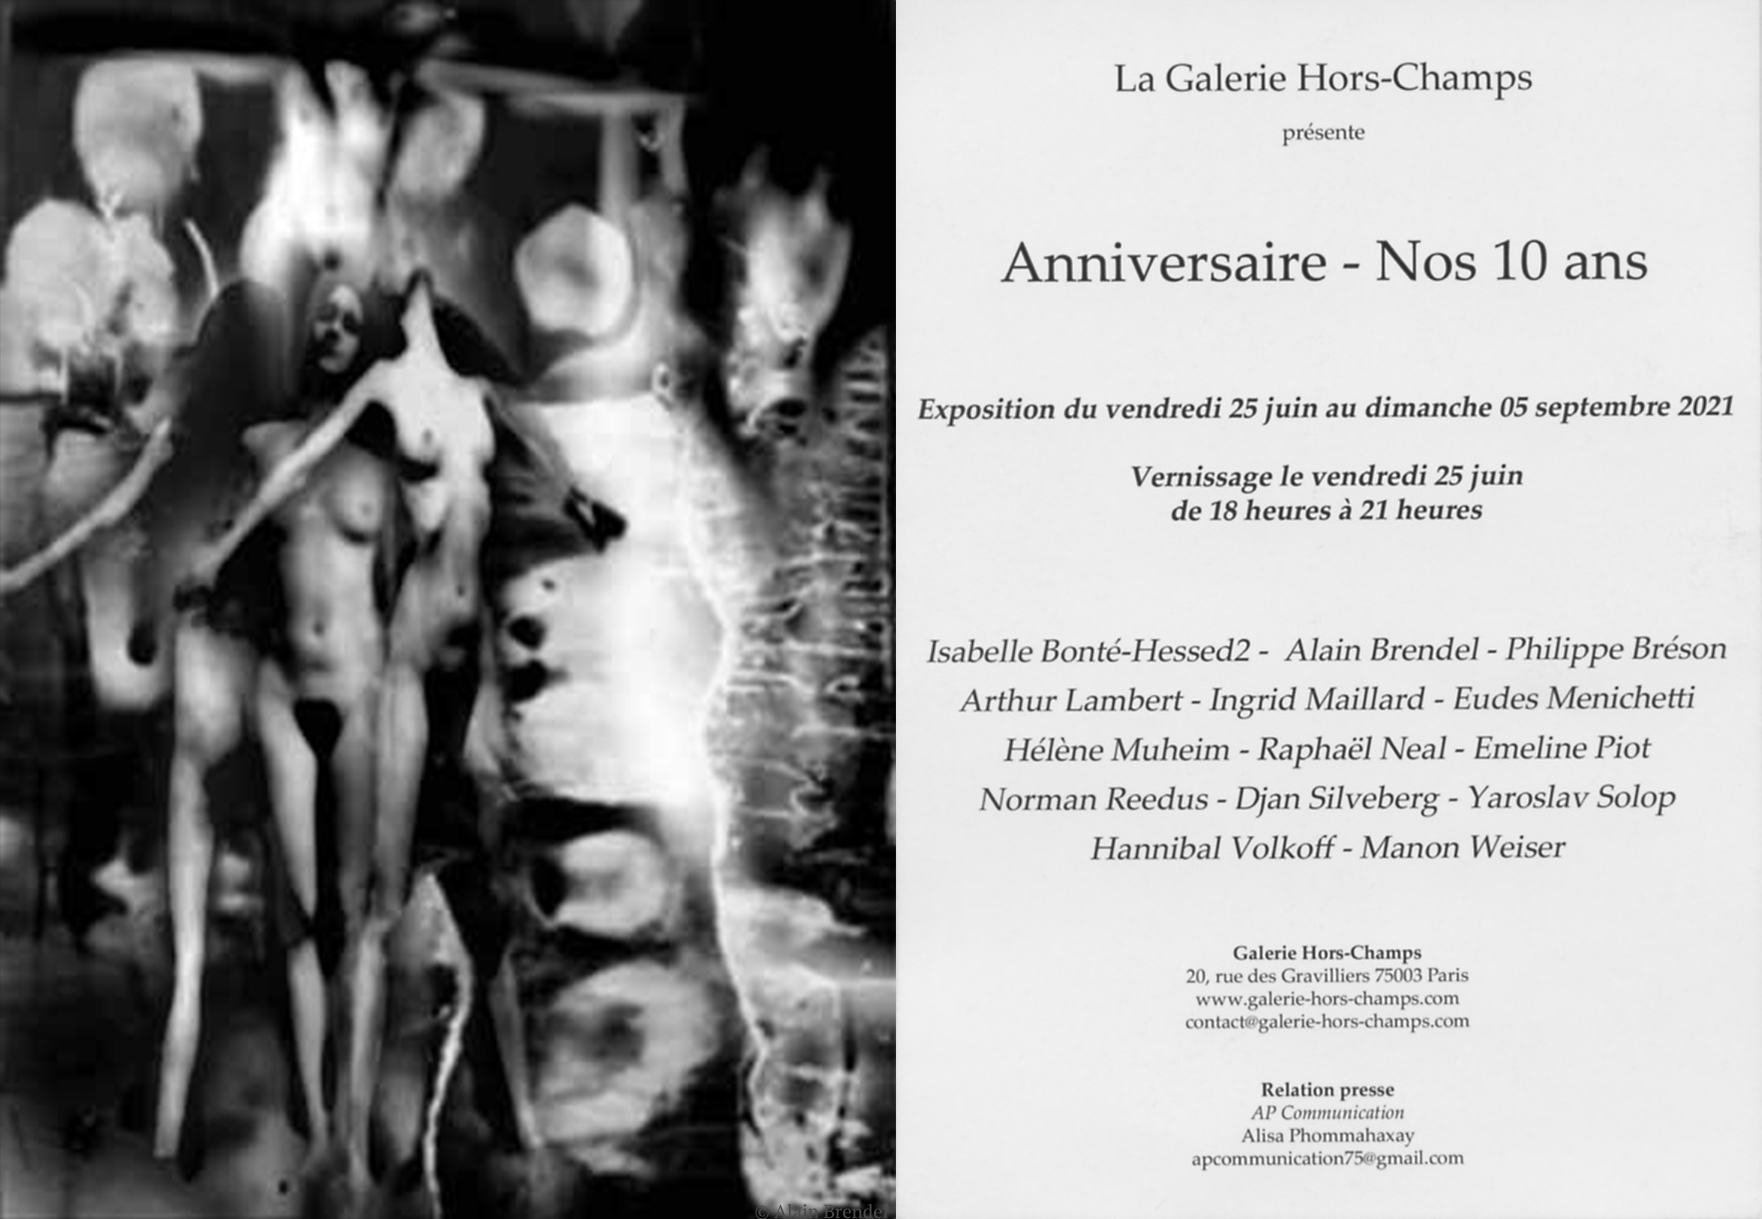 Les 10 Ans de la Galerie Hors-Champs